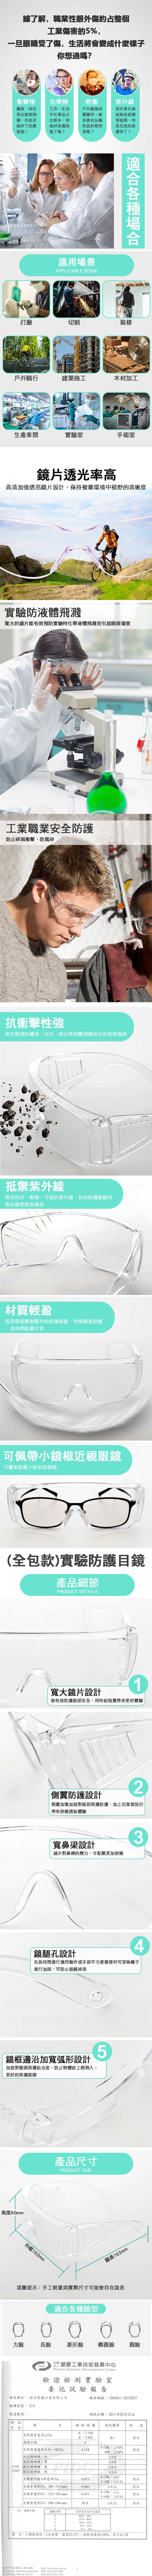 一體成型強化安全眼鏡 眼鏡護目鏡 工作護目鏡 防護眼鏡 防塵護目鏡 透明護目鏡